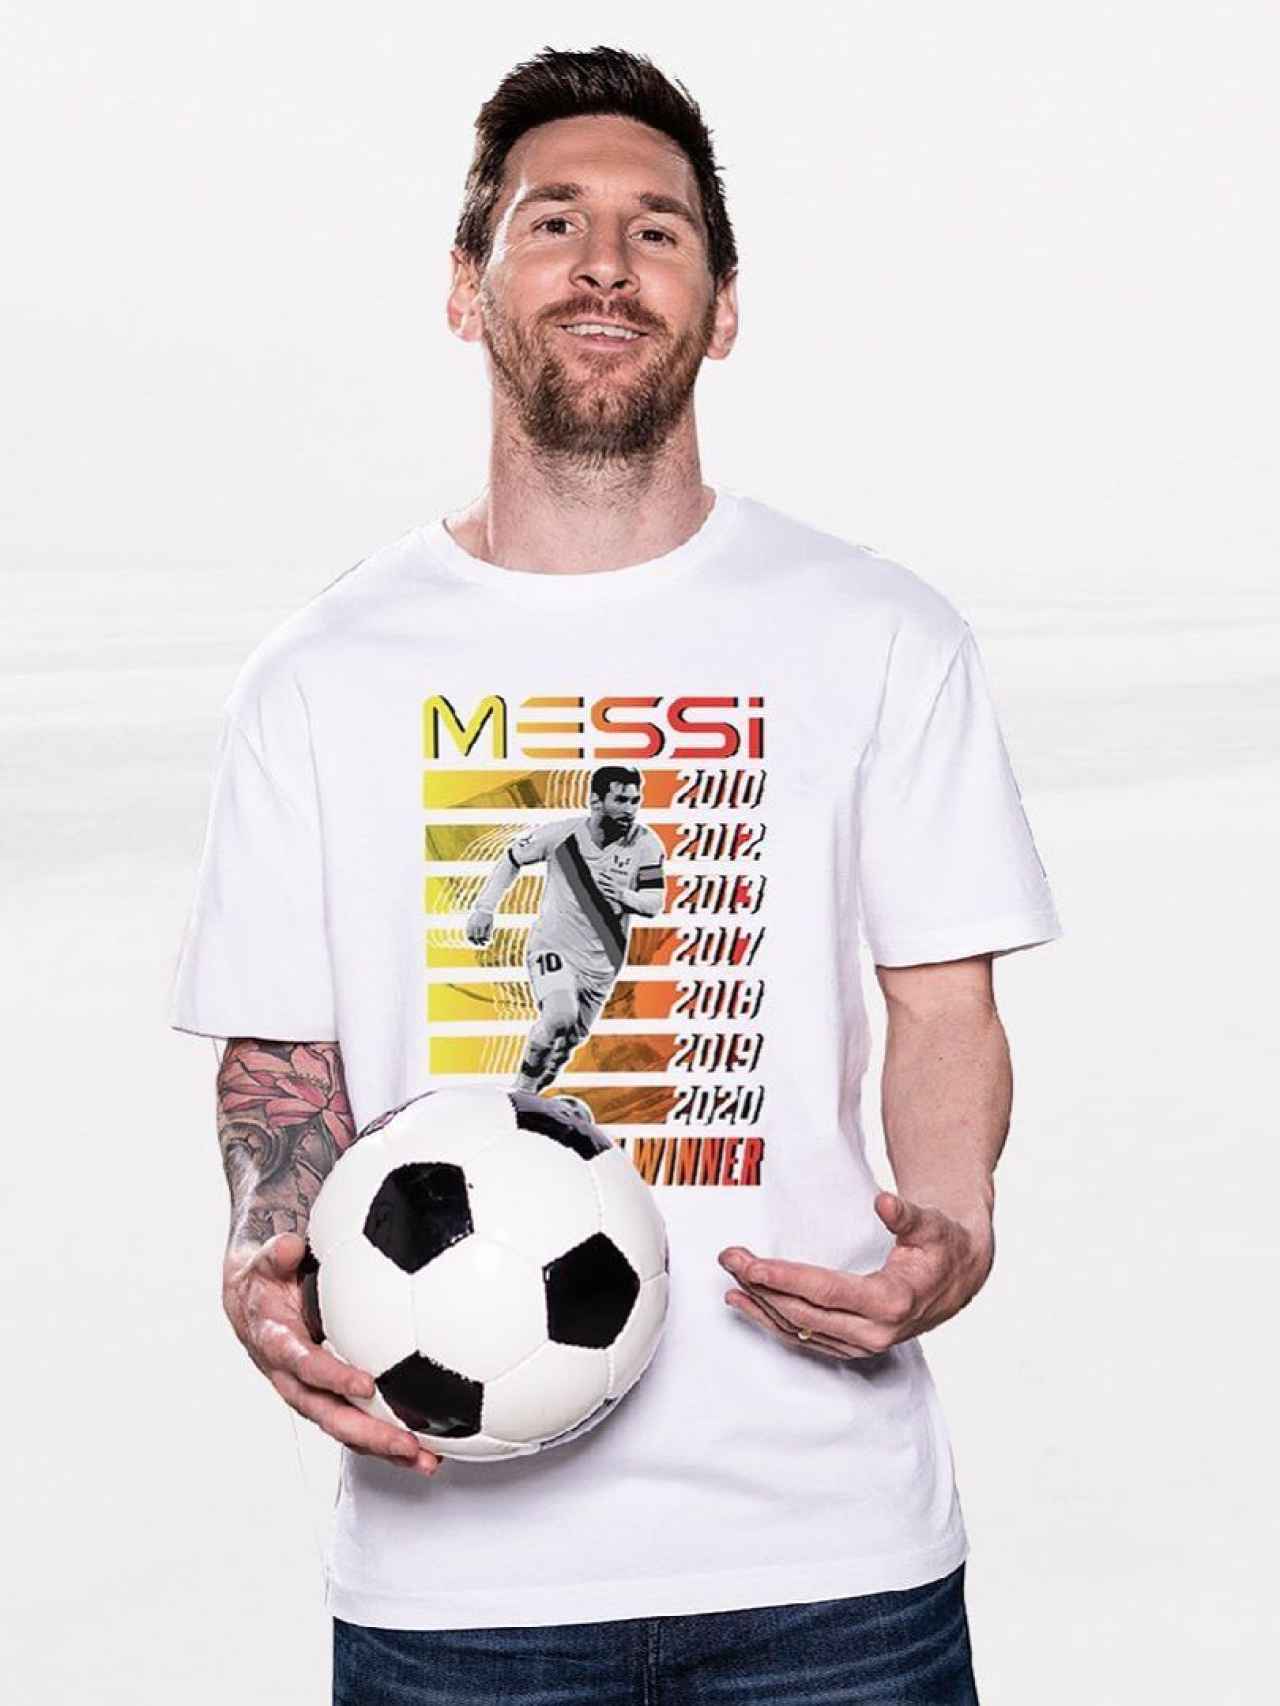 Leo Messi, luciendo una de las camisetas de su marca.